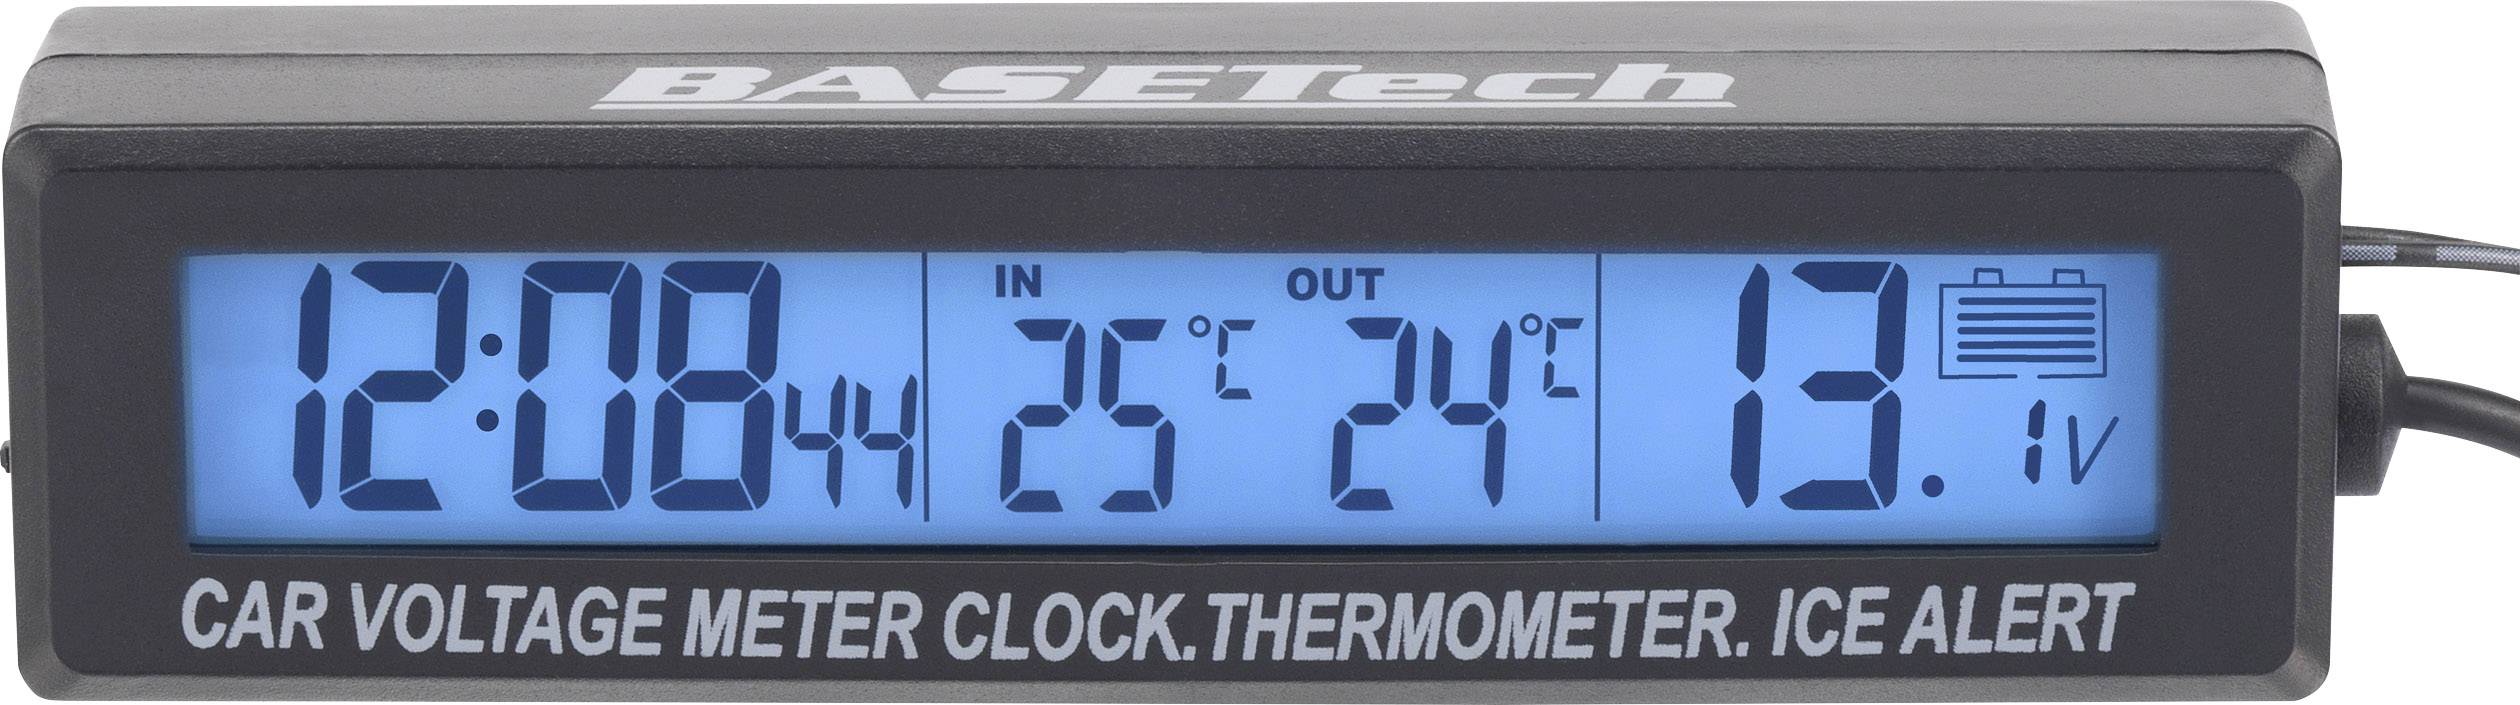 Middag eten Prime ga winkelen EC88 Basetech Thermometer Opbouw, IJswaarschuwing, Kabelsensor,  Binnentemperatuur, Buitentemperatuur, Voltmeter, 12/24 h | Conrad.nl